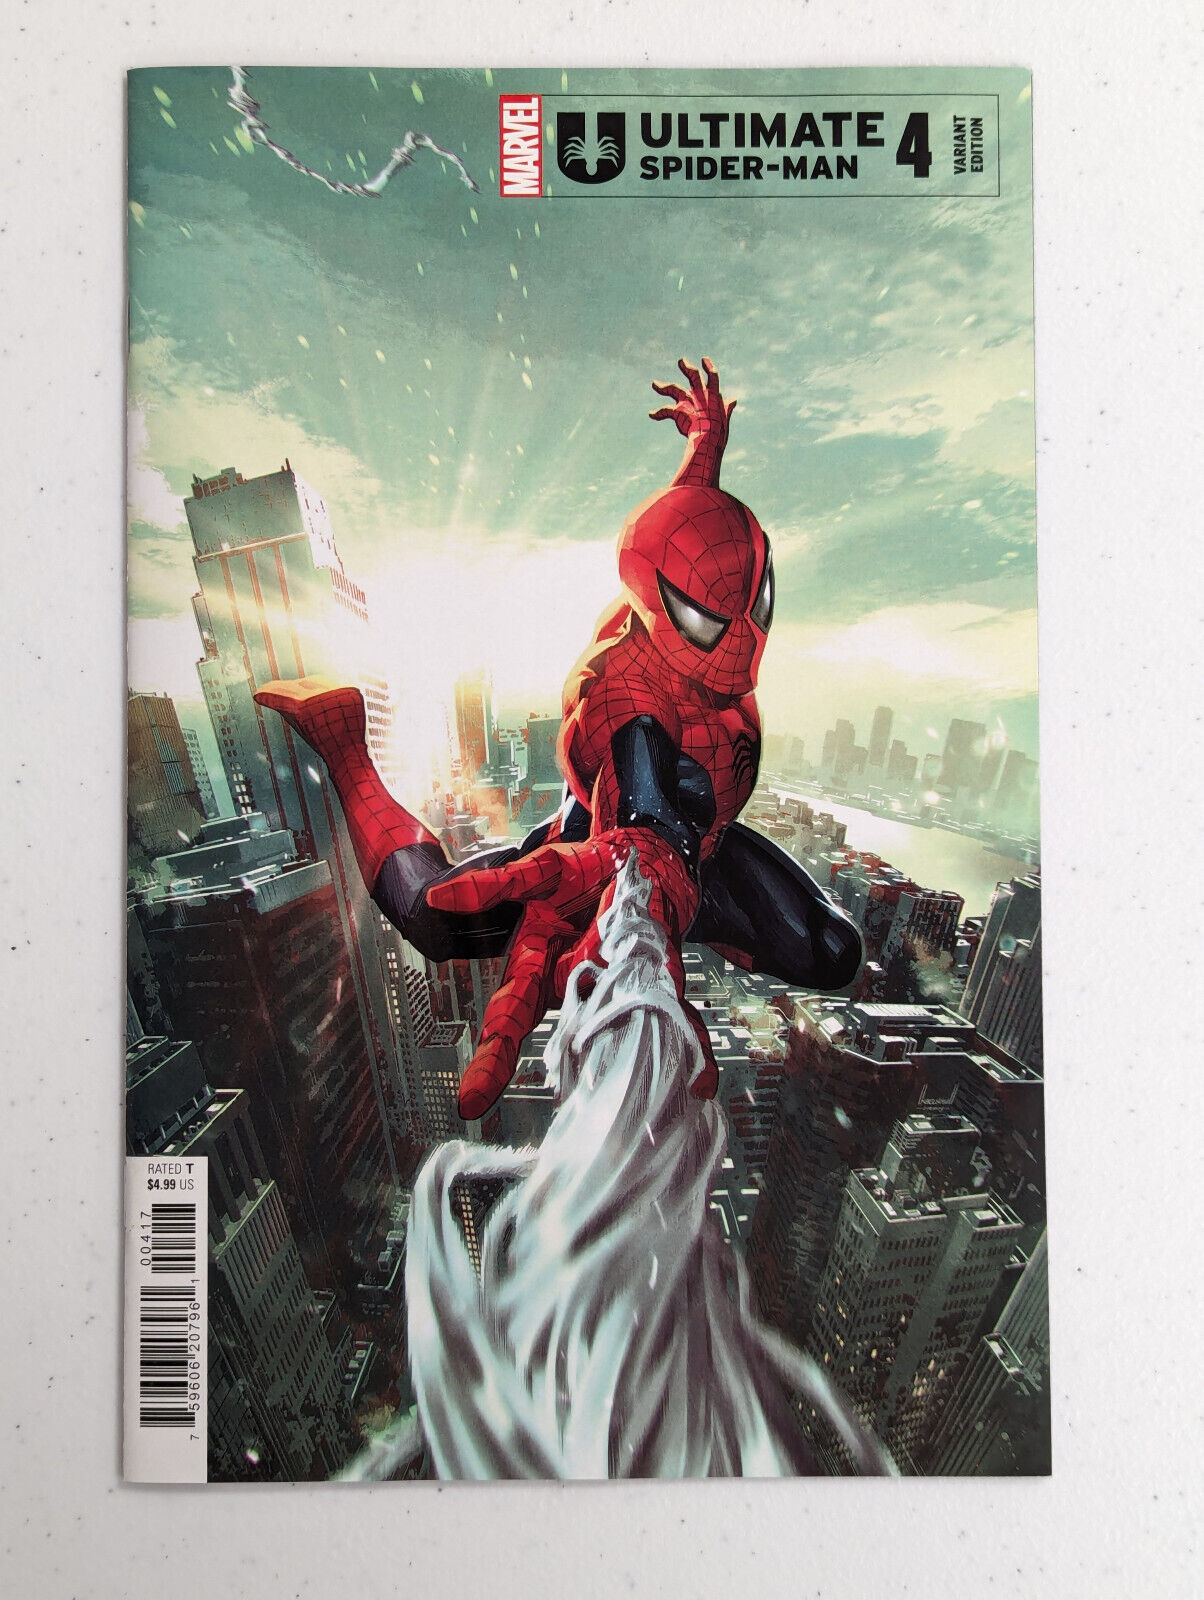 ULTIMATE SPIDER-MAN #4 1:25 KAEL NGU VARIANT COVER